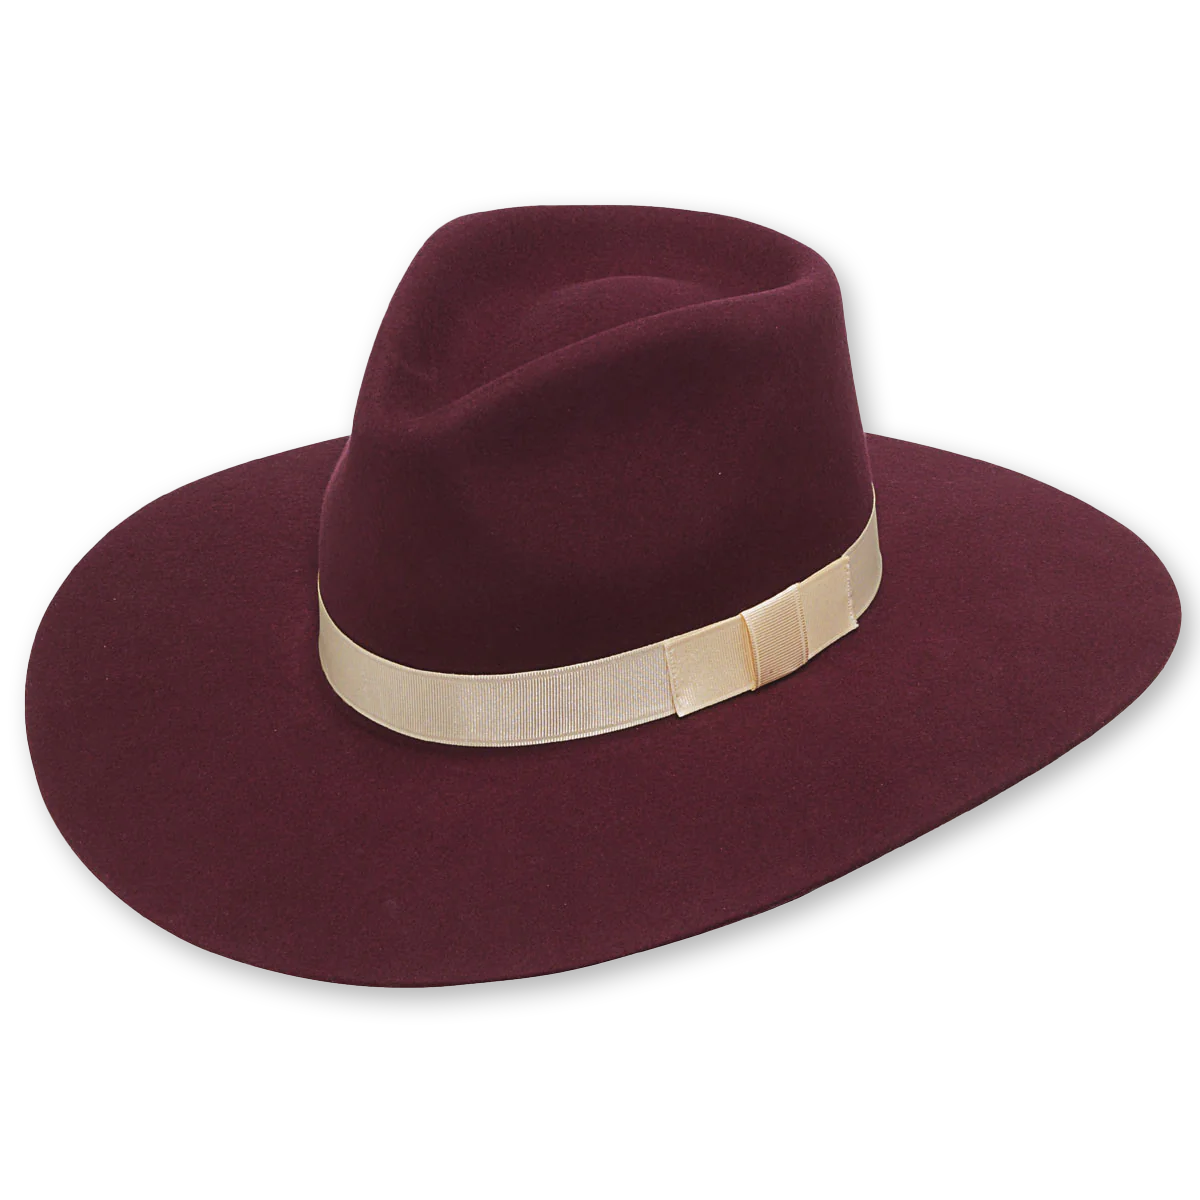 Women's Pinch Front Western Felt Hat - Merlot